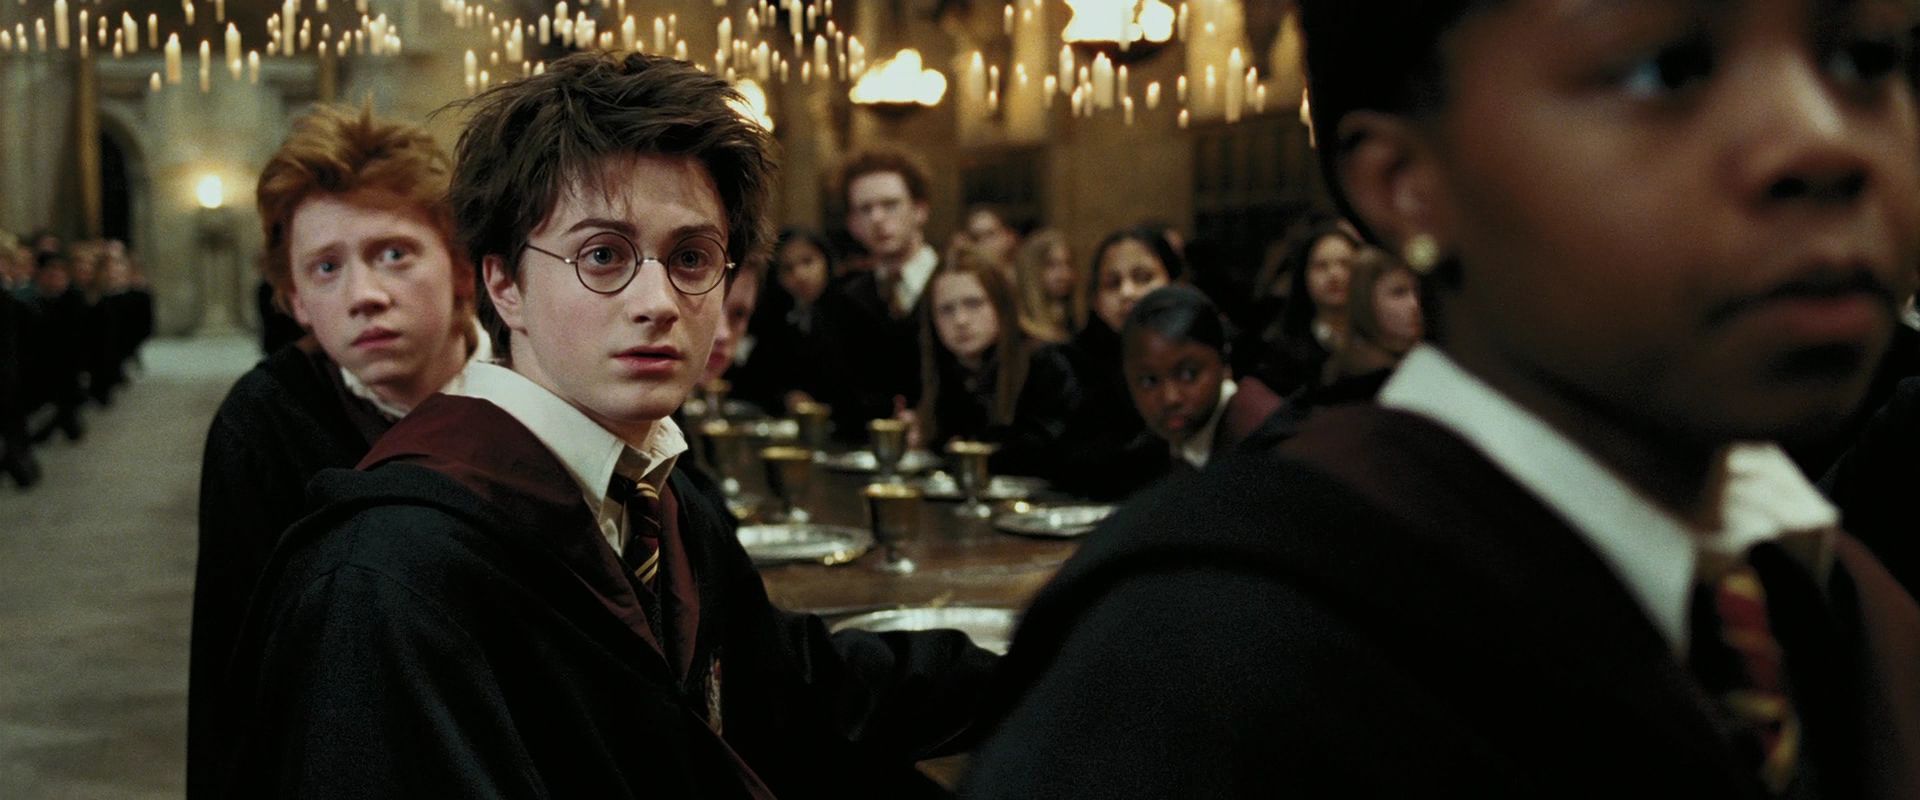 Harry Potter And The Prisoner Of Azkaban #8